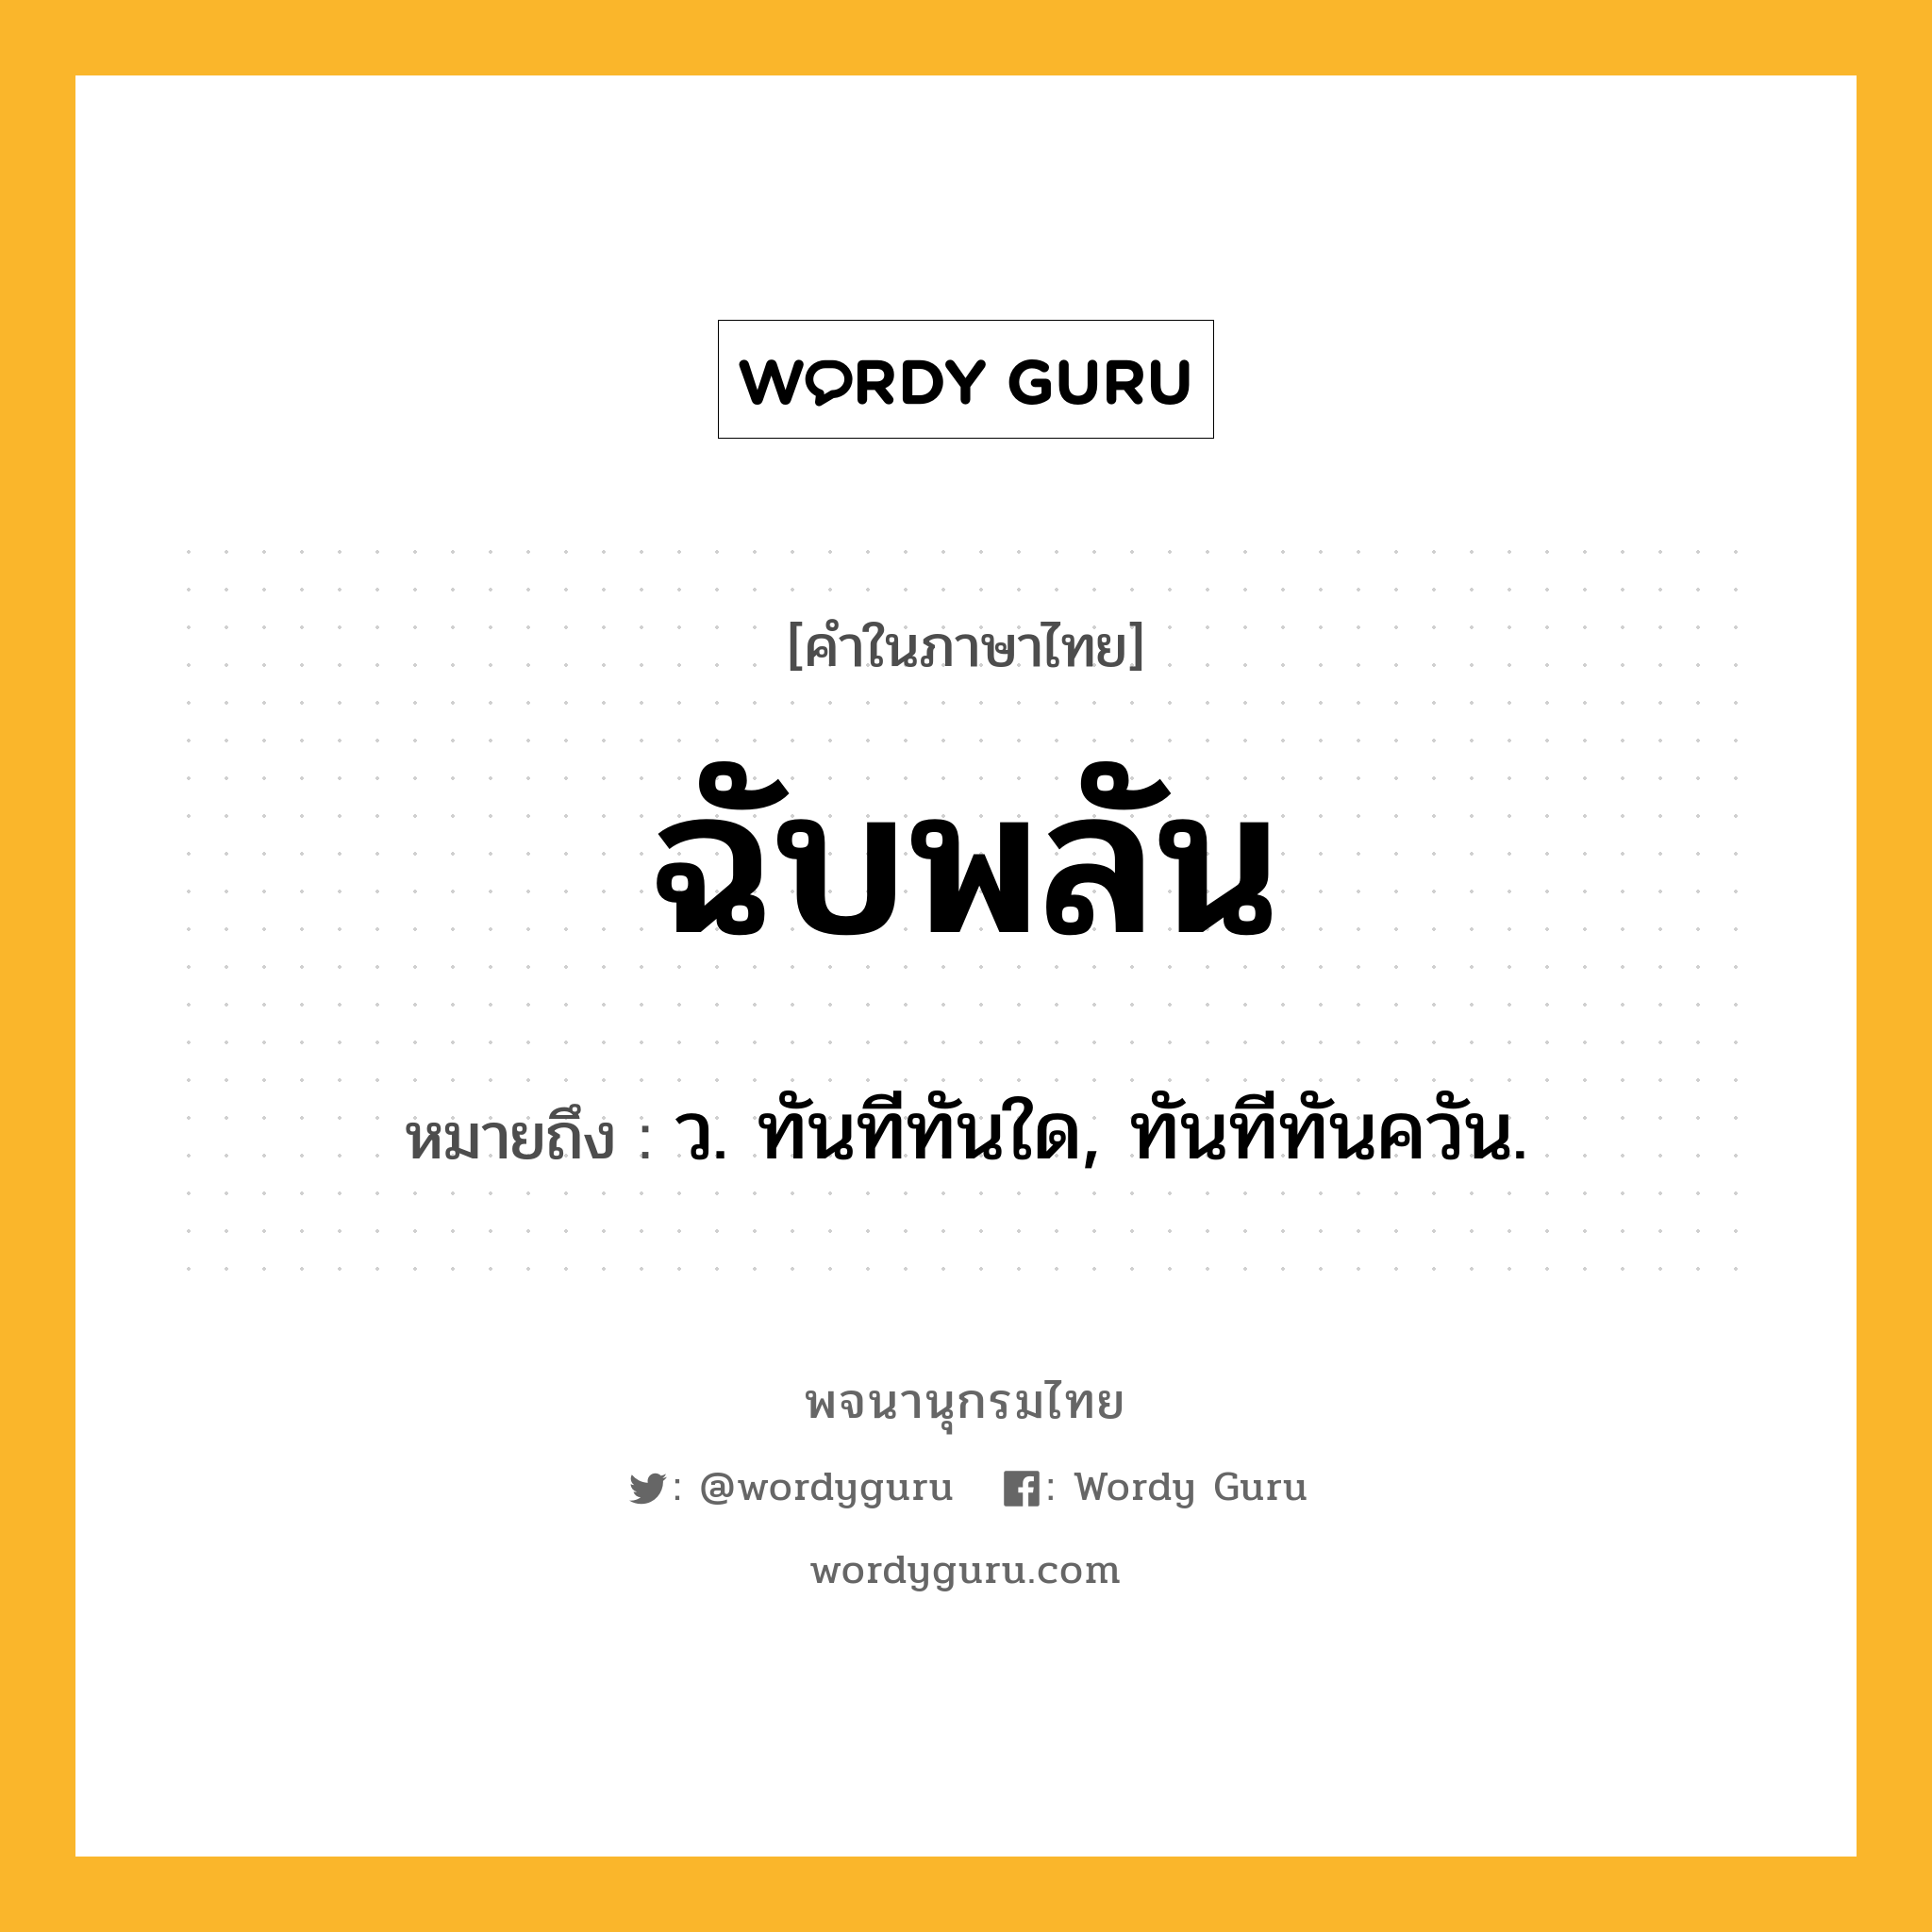 ฉับพลัน หมายถึงอะไร?, คำในภาษาไทย ฉับพลัน หมายถึง ว. ทันทีทันใด, ทันทีทันควัน.